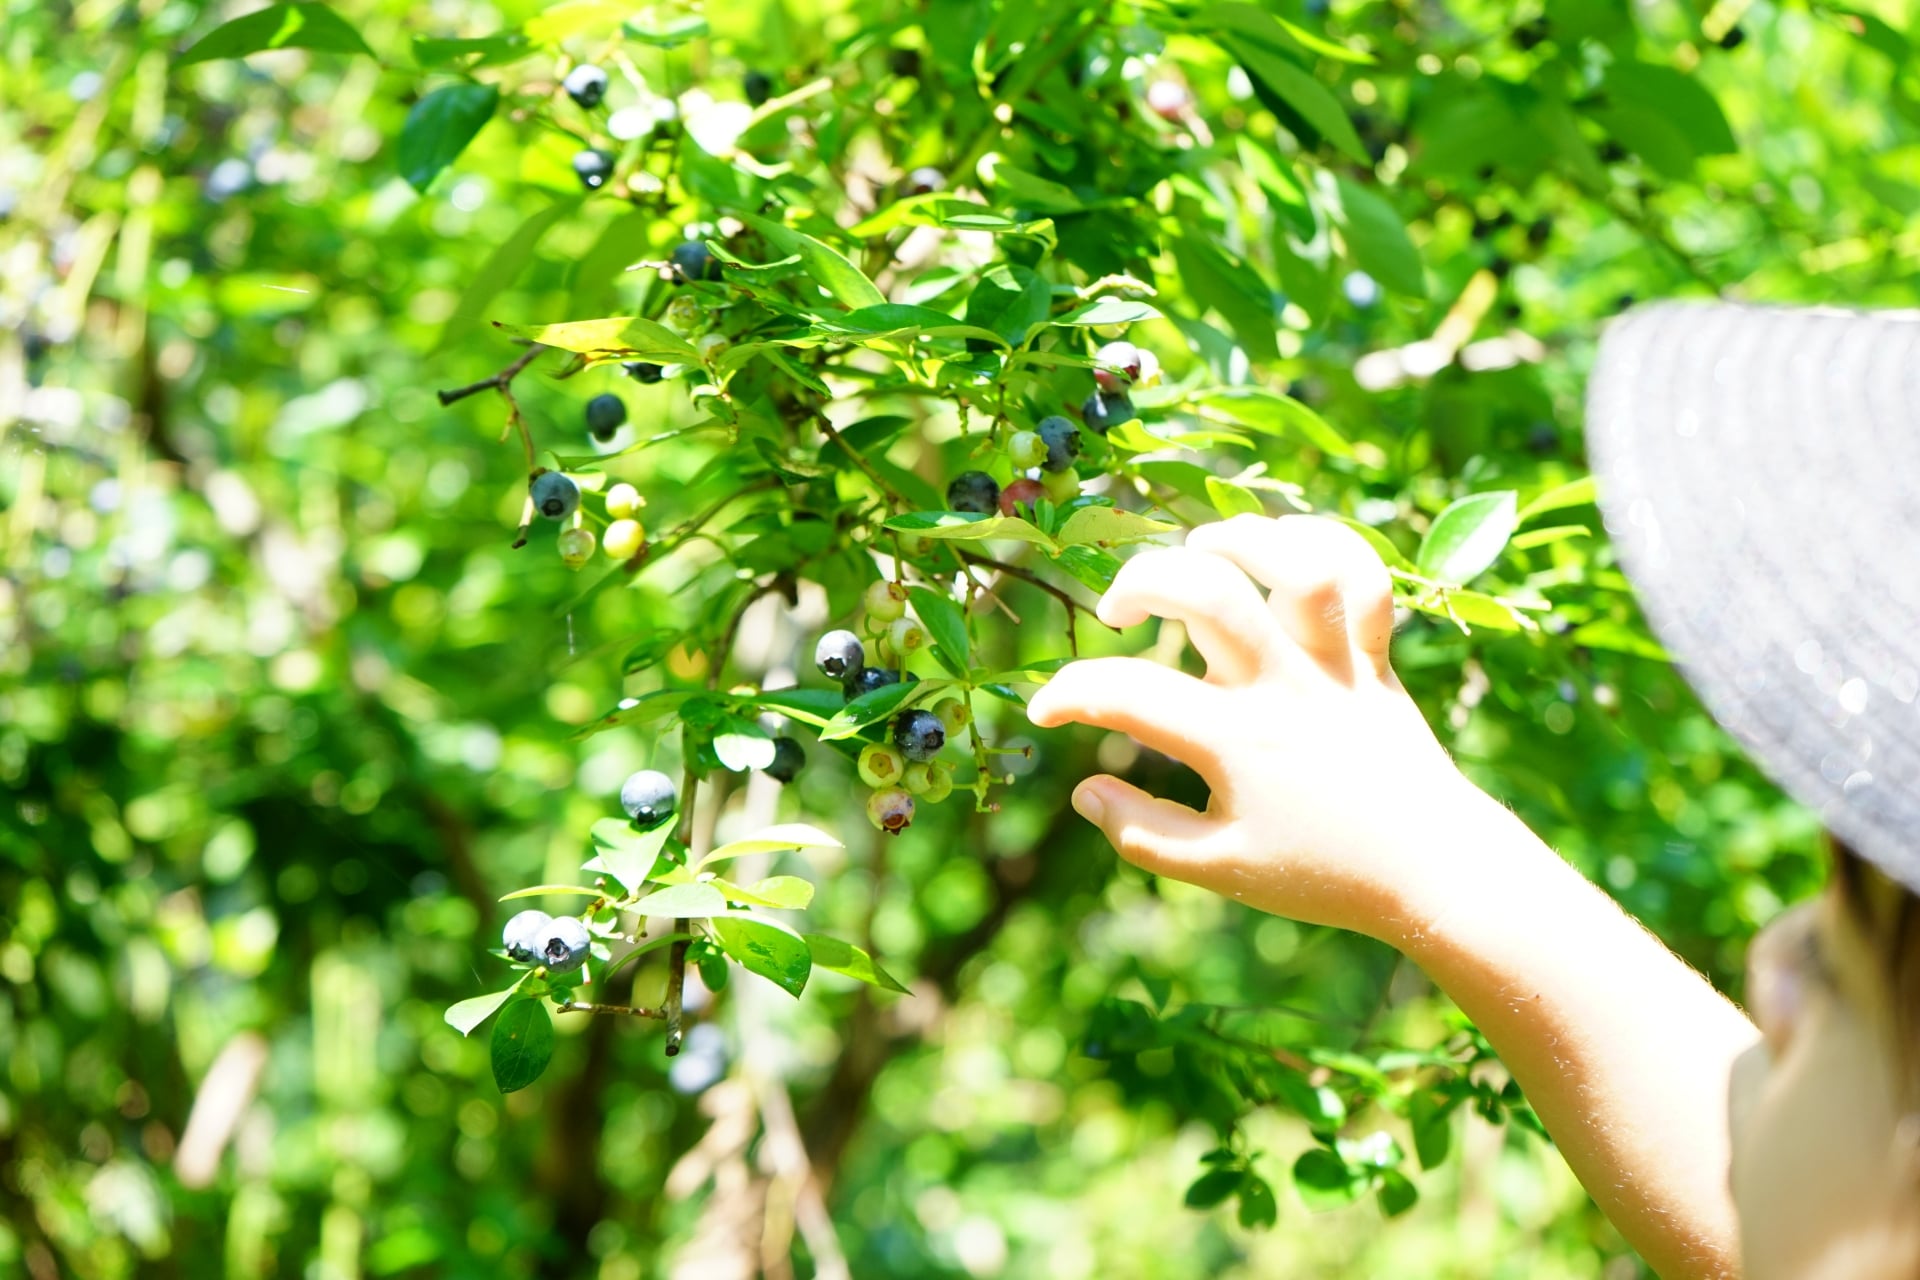 ブルーベリーのウッダードの育て方や特徴とは ブルーベリーの栽培 鉢植え 剪定 肥料 方法と健康効果ナビ